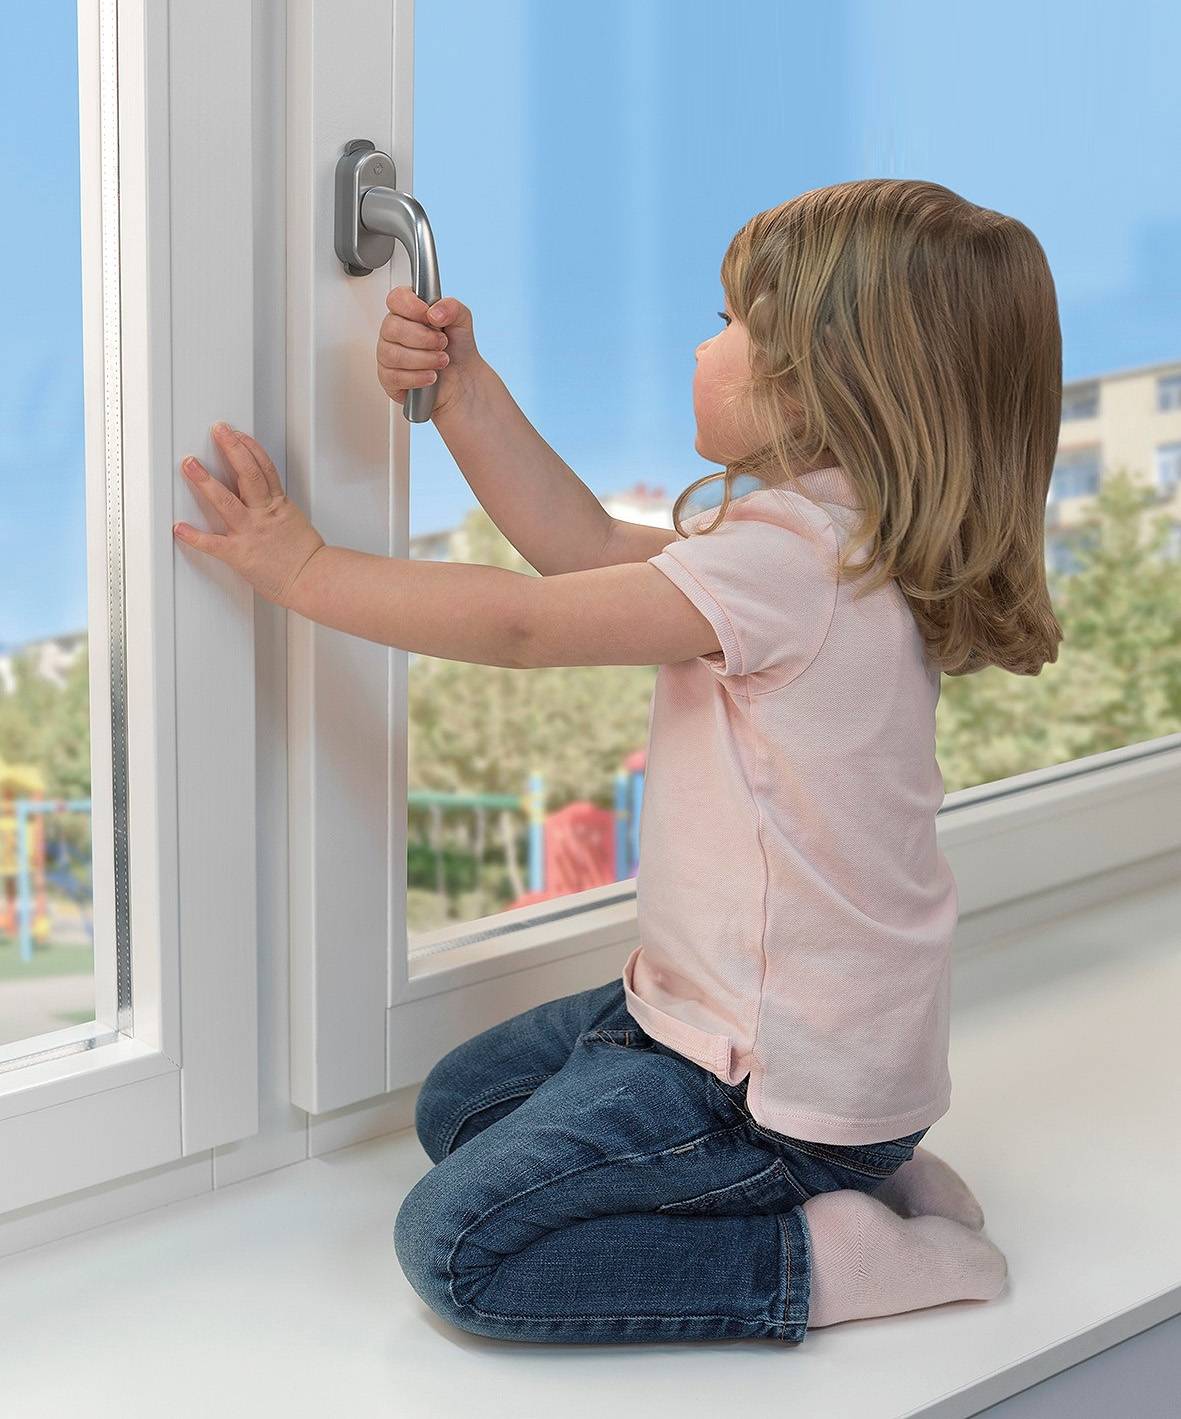 9 советов по выбору детского замка на окна